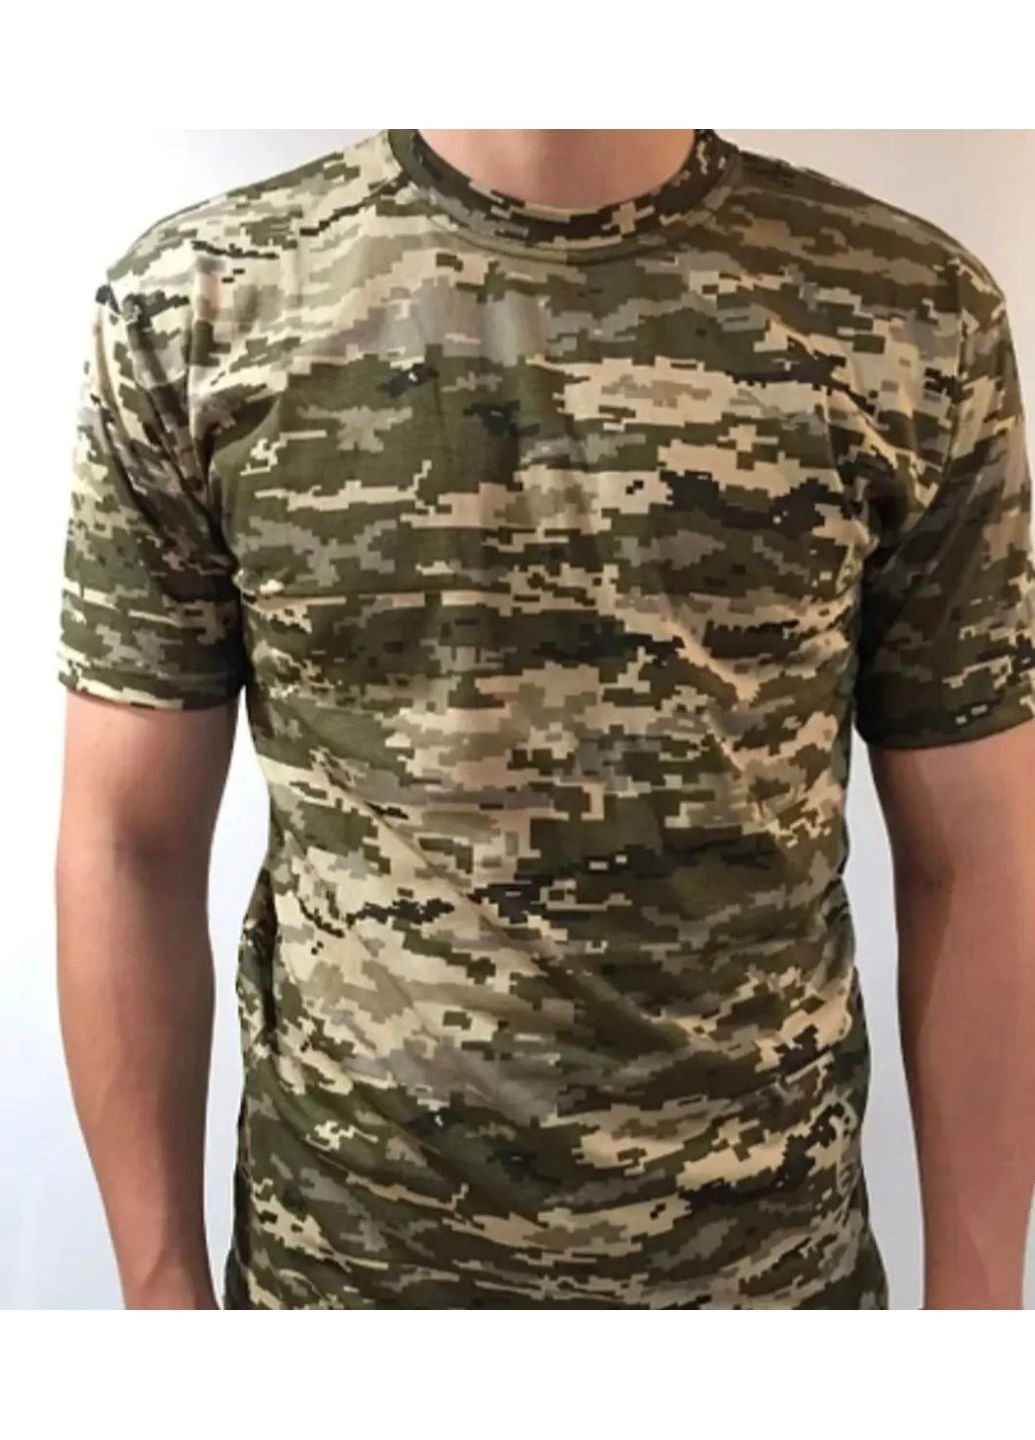 Хаки (оливковая) футболка мужская тактическая пиксель светлый всу 56 р 6579 хаки No Brand